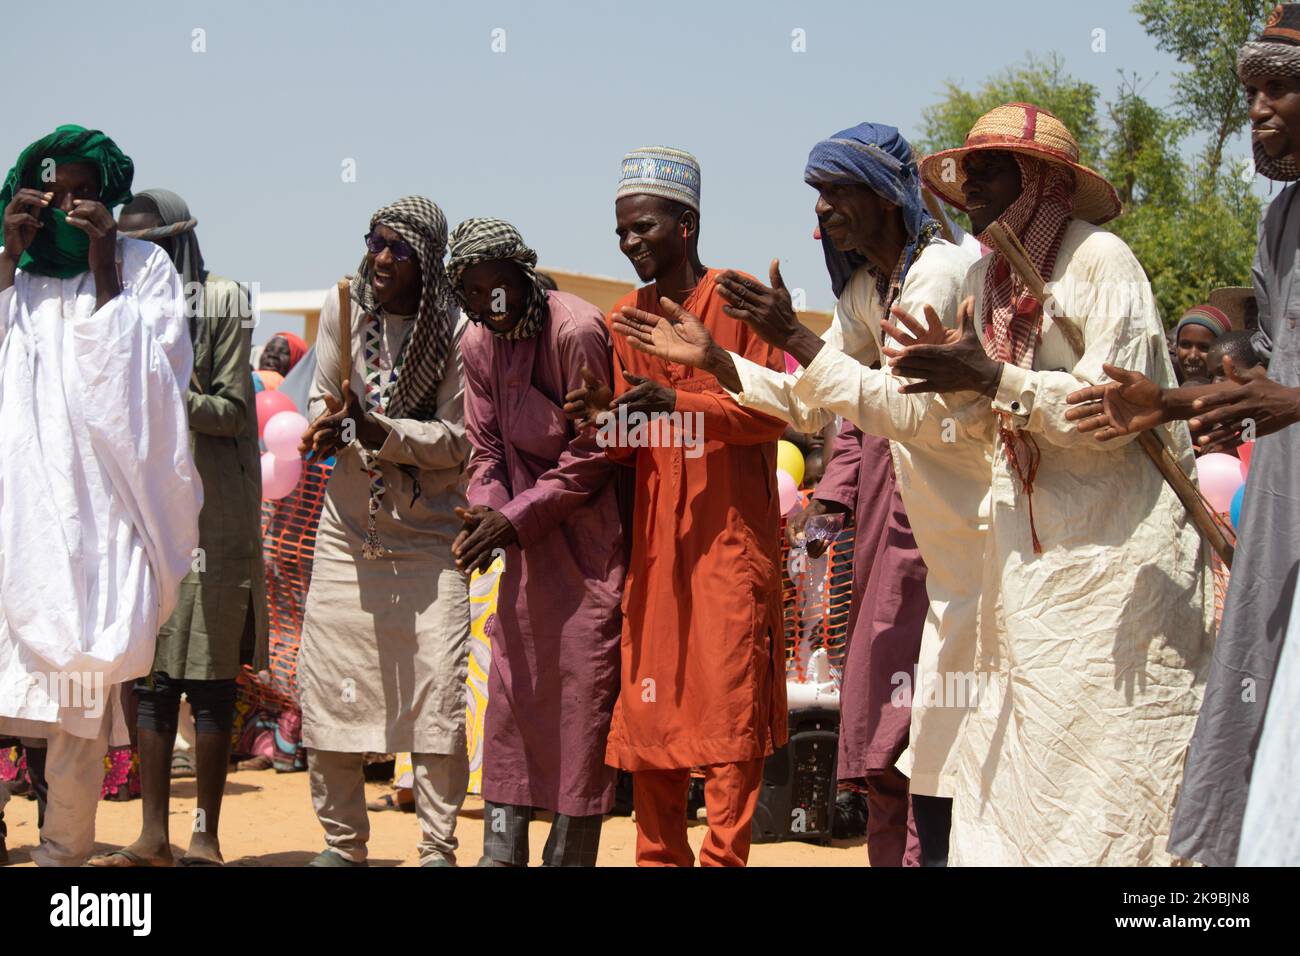 Tribù africane, Nigeria, Stato di Borno, città di Maiduguri. I membri della tribù dei Fulani sono tradizionalmente vestiti con una cerimonia di danza tribale, vestiti tradizionalmente Foto Stock